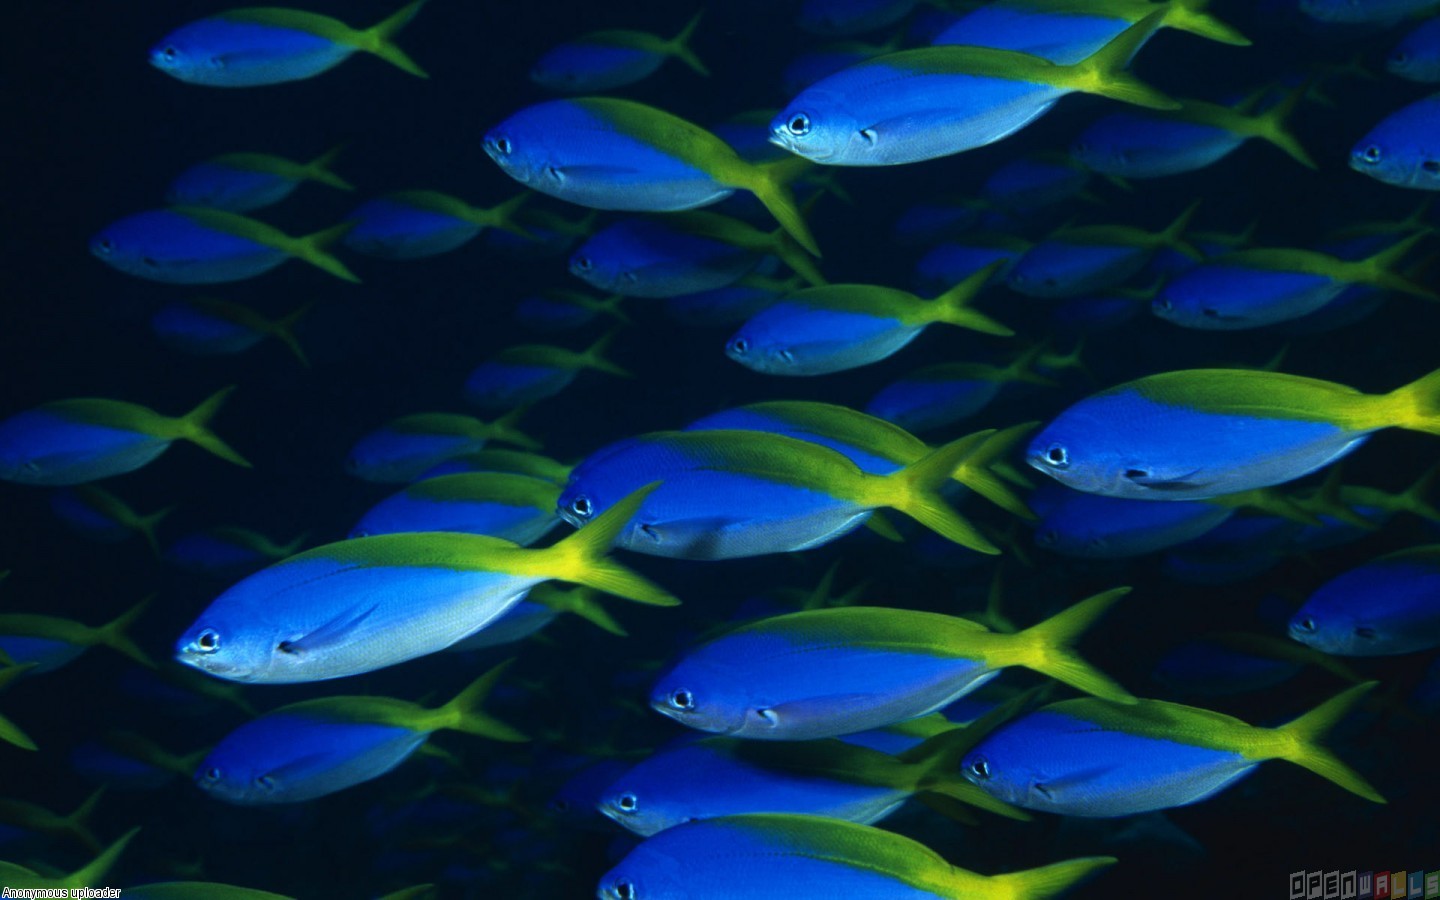 Blue Ocean Wallpaper with Fish - WallpaperSafari